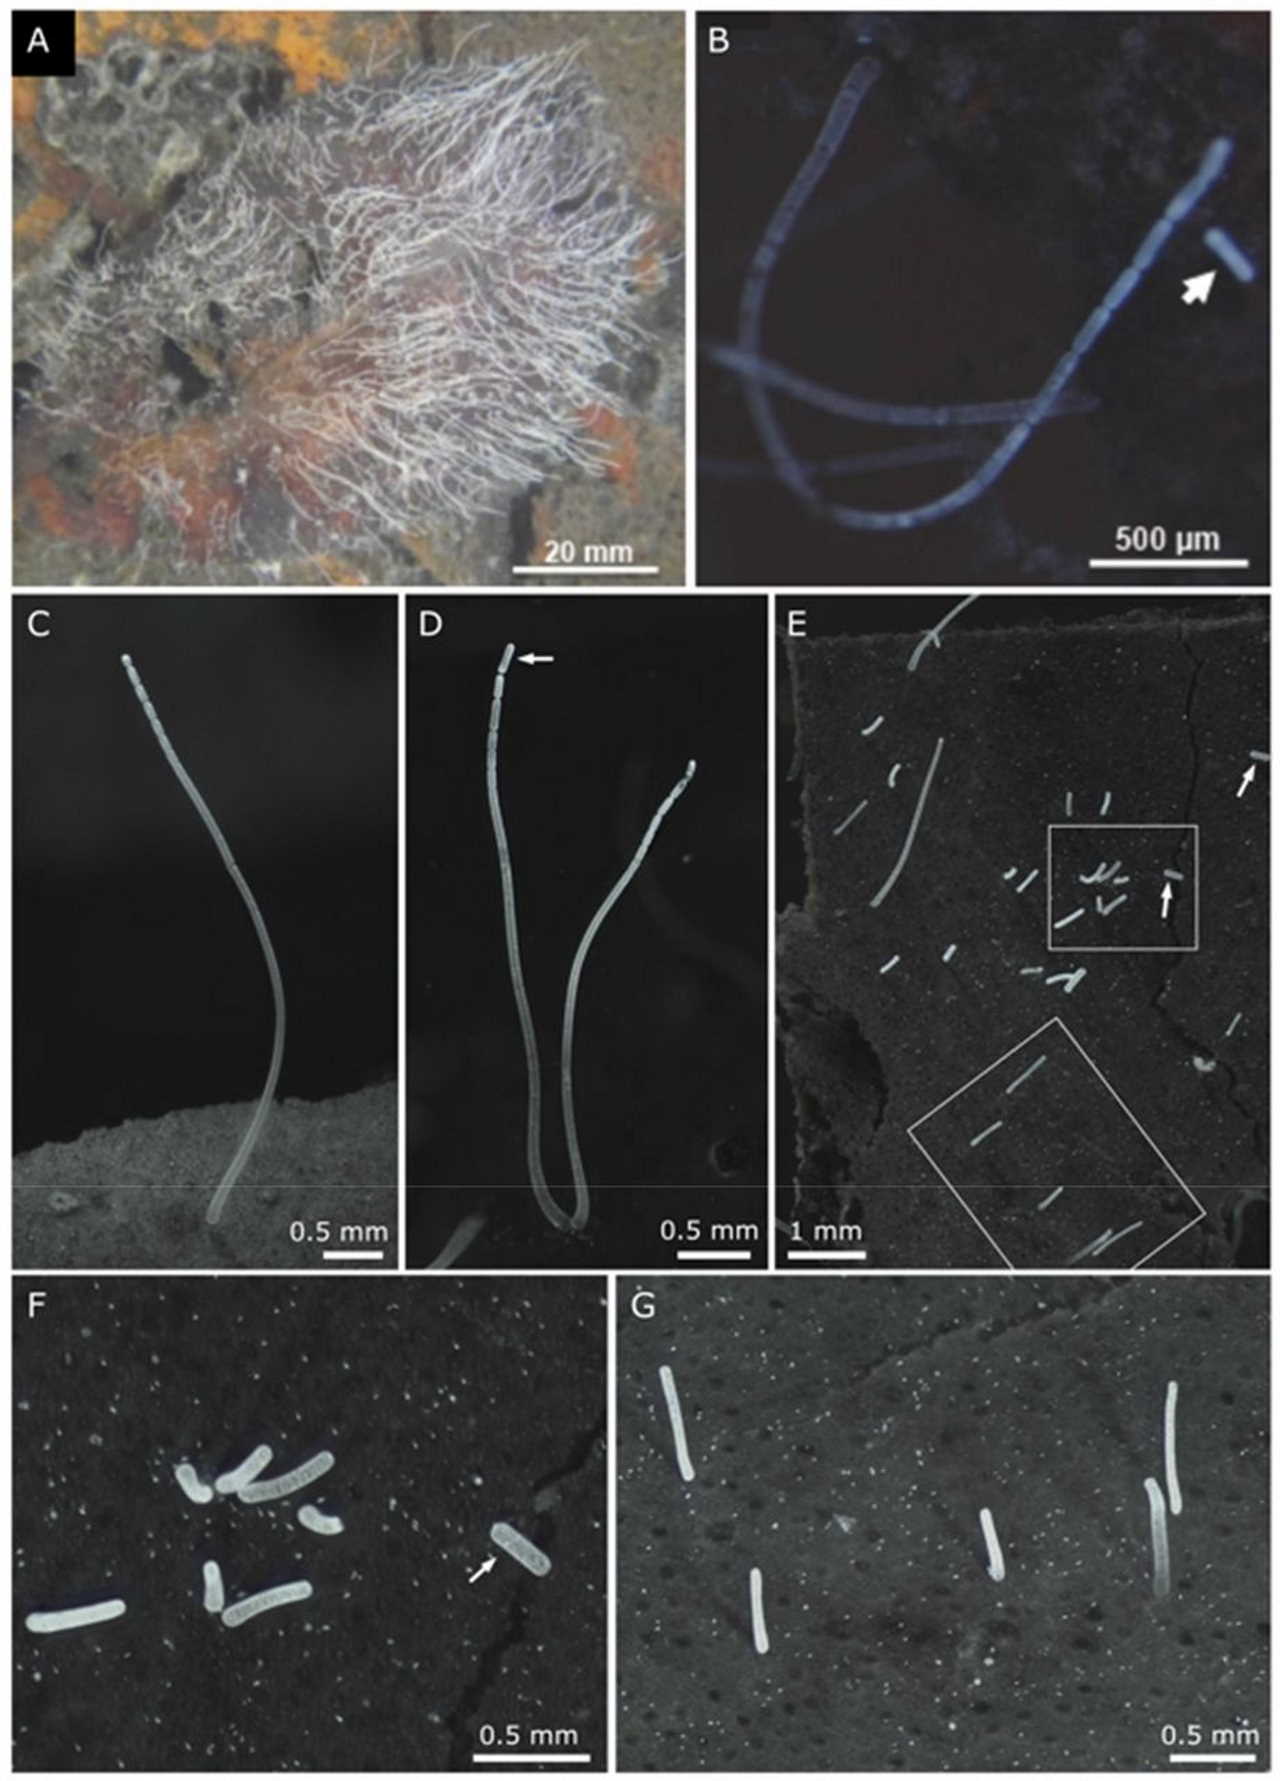 Мікроскопія нового виду бактерії. А. Клітини на листкові мангру. В-D. Демонстрація брунькування бактерії. Е. Ділянка листка з відділеними дочірніми клітинами бактерії різного розміру. F-G. Те ж зі збільшенням. Volland et al. / bioRxiv, 2022